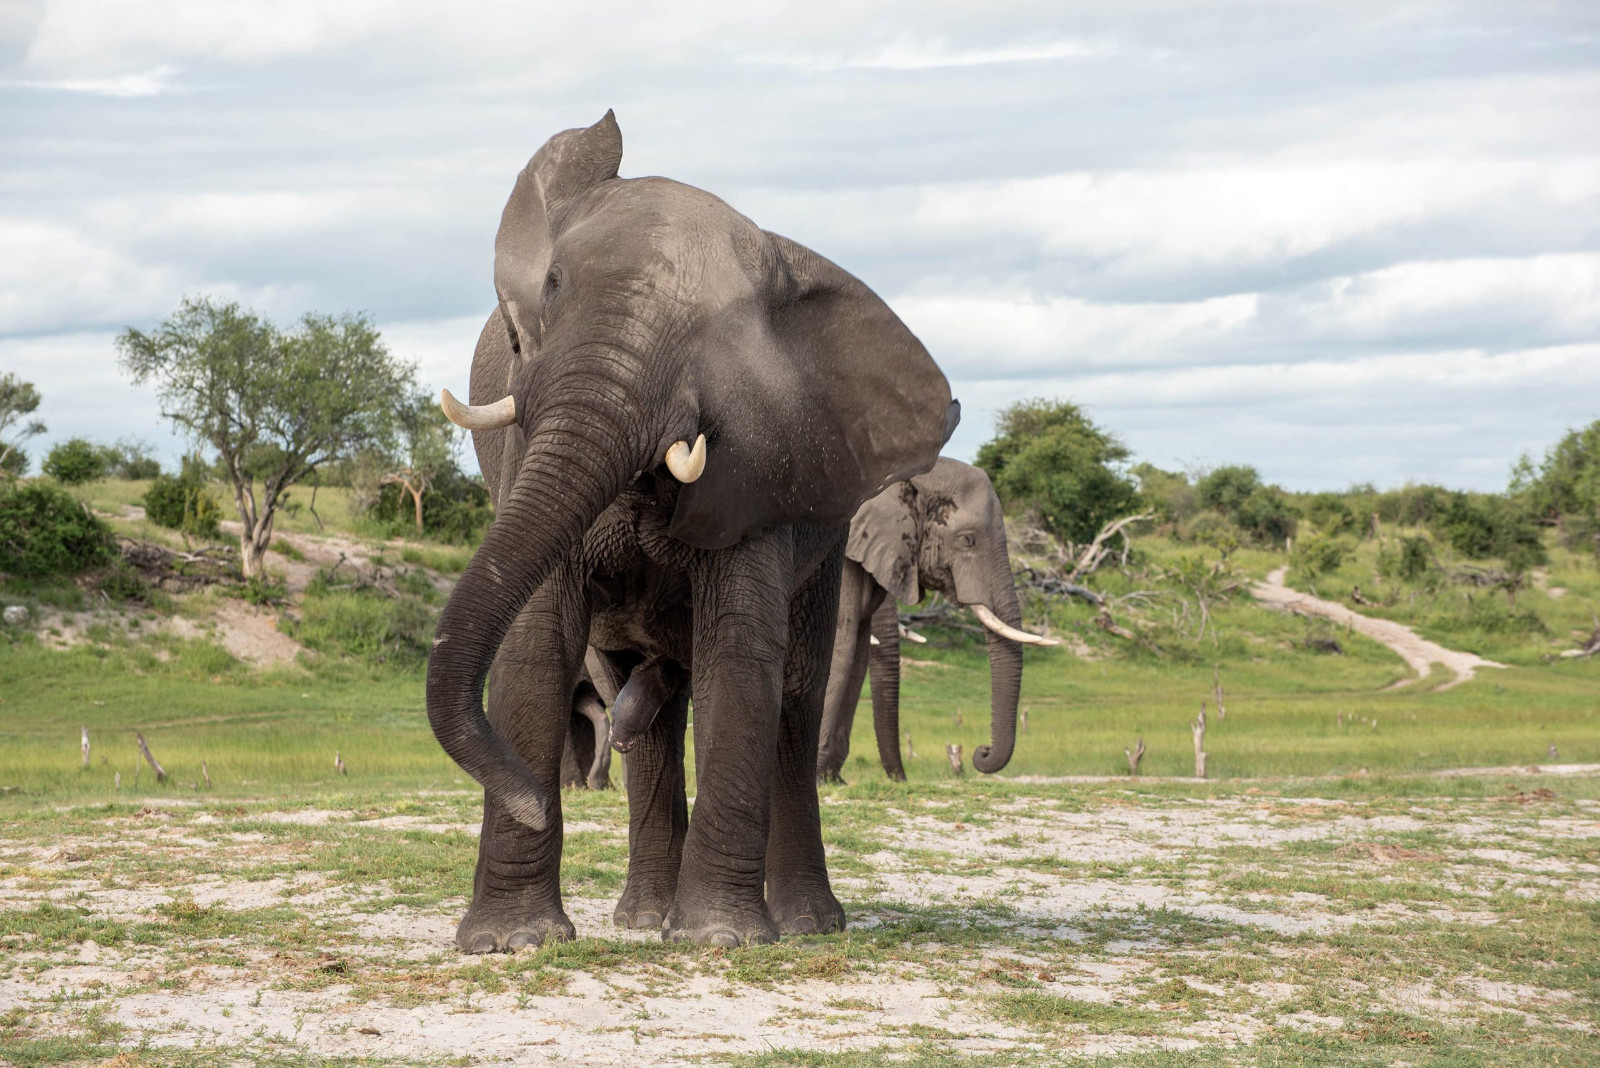 埃克塞特大学新研究指如果象群里年长者的数量较少 雄性大象就会更加凸显其攻击性